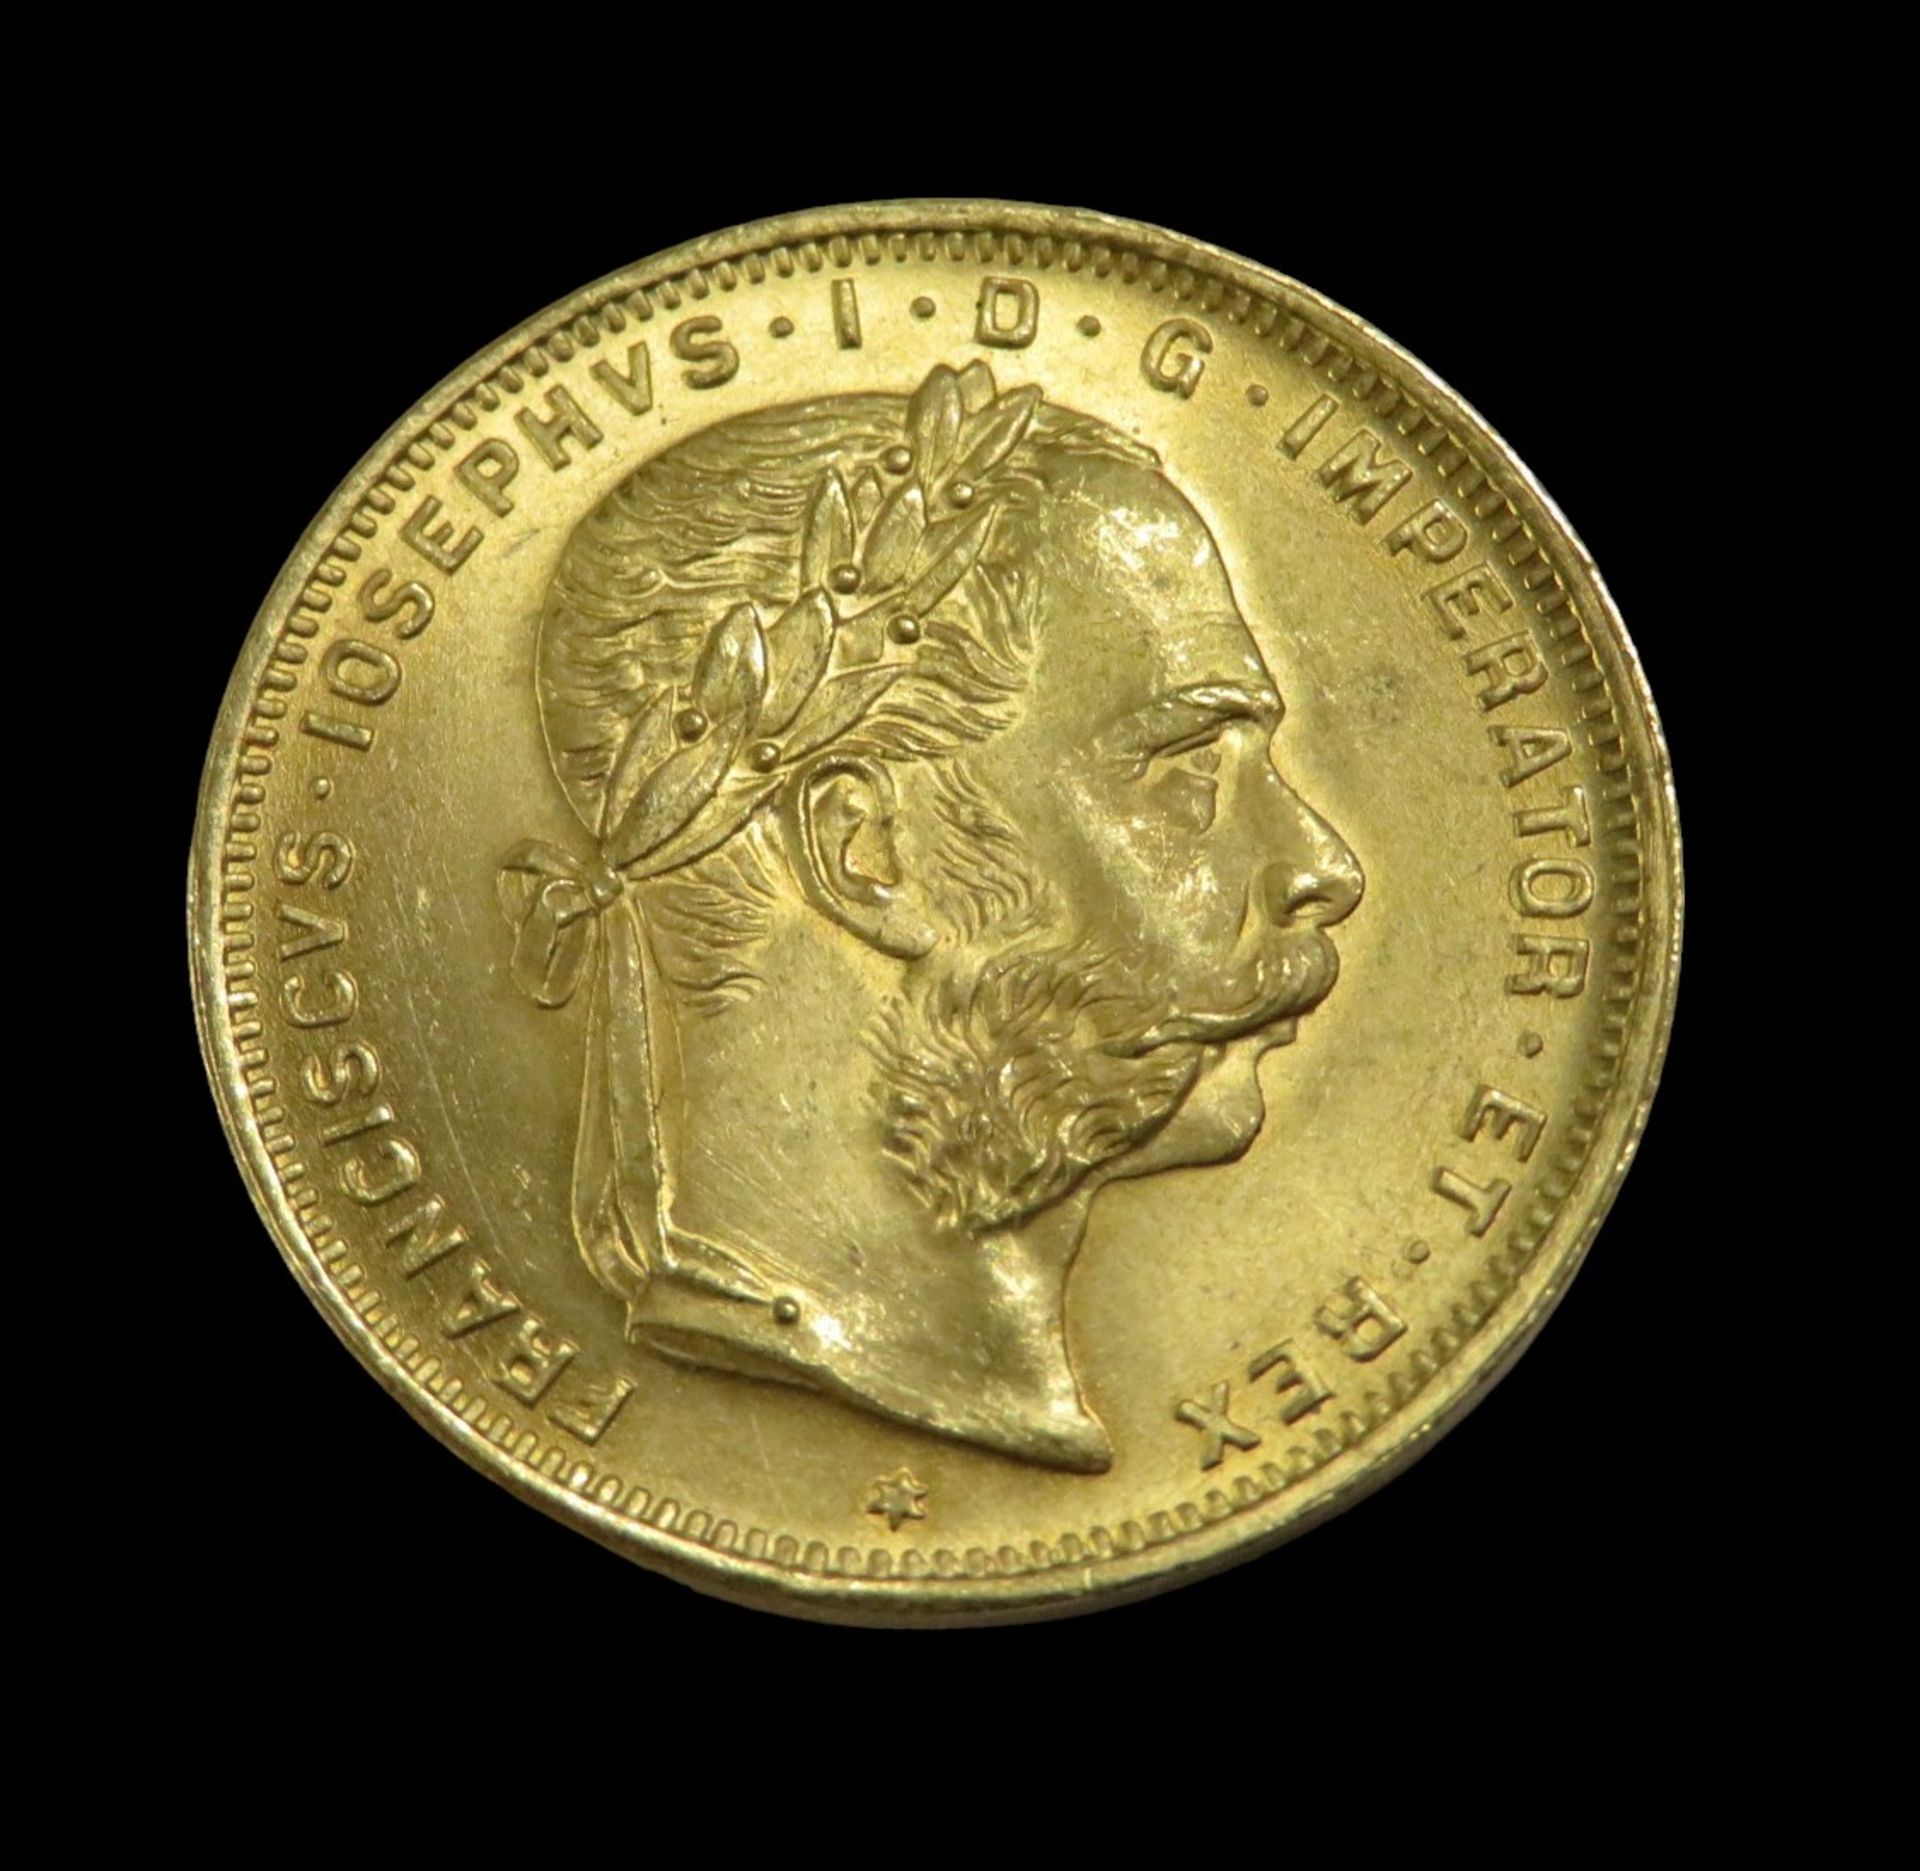 Goldmünze, Österreich, 8 Florin/20 Gulden, Franz Joseph I, 1892, Gold 900/000, 6,4 g, d 2,1 cm.